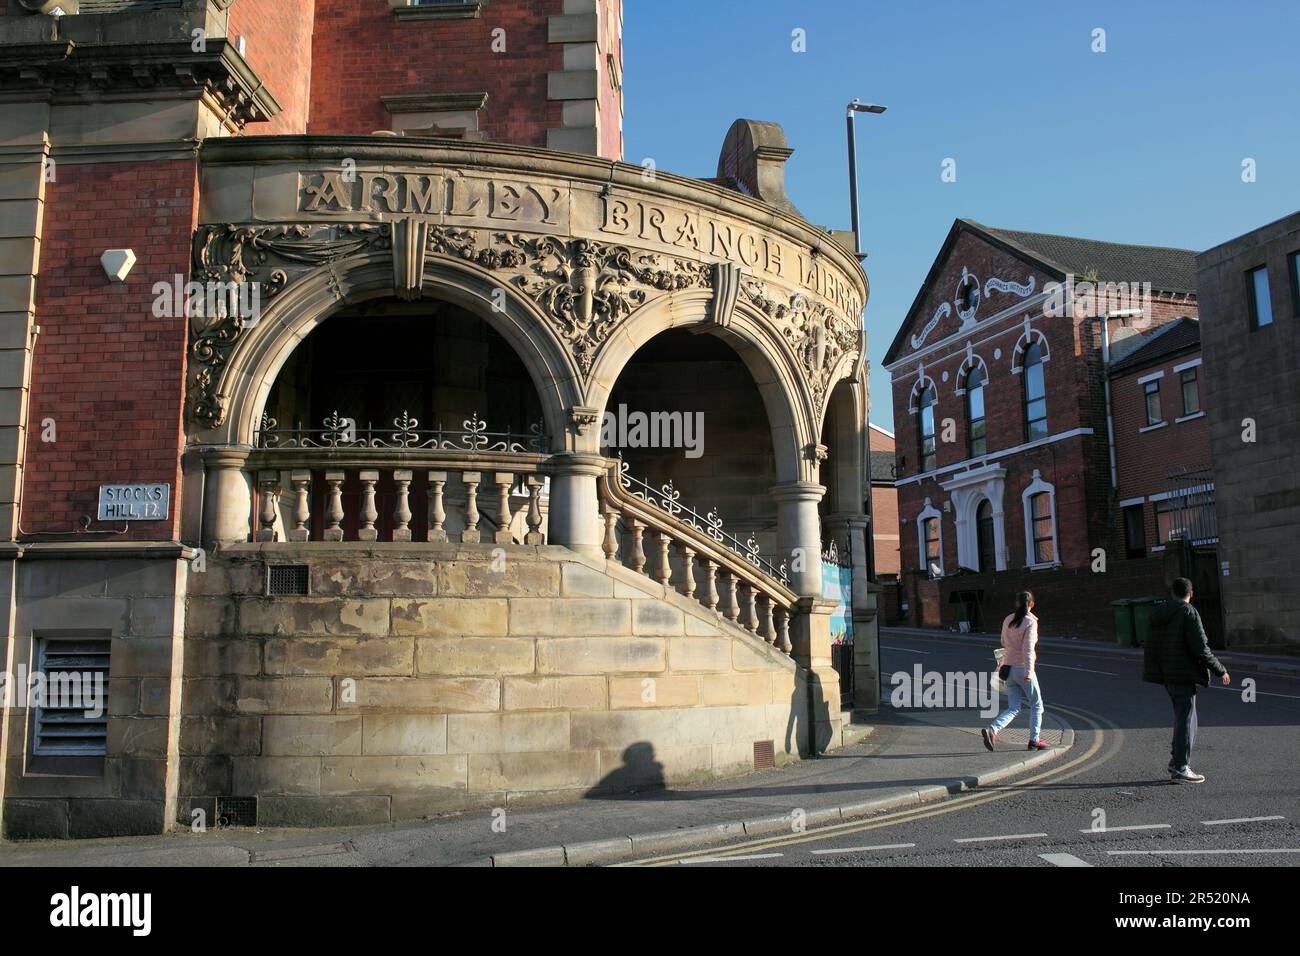 Der späte Abend scheint am Eingang zur Armley Branch Library, Stocks Hill, Leeds. Stockfoto